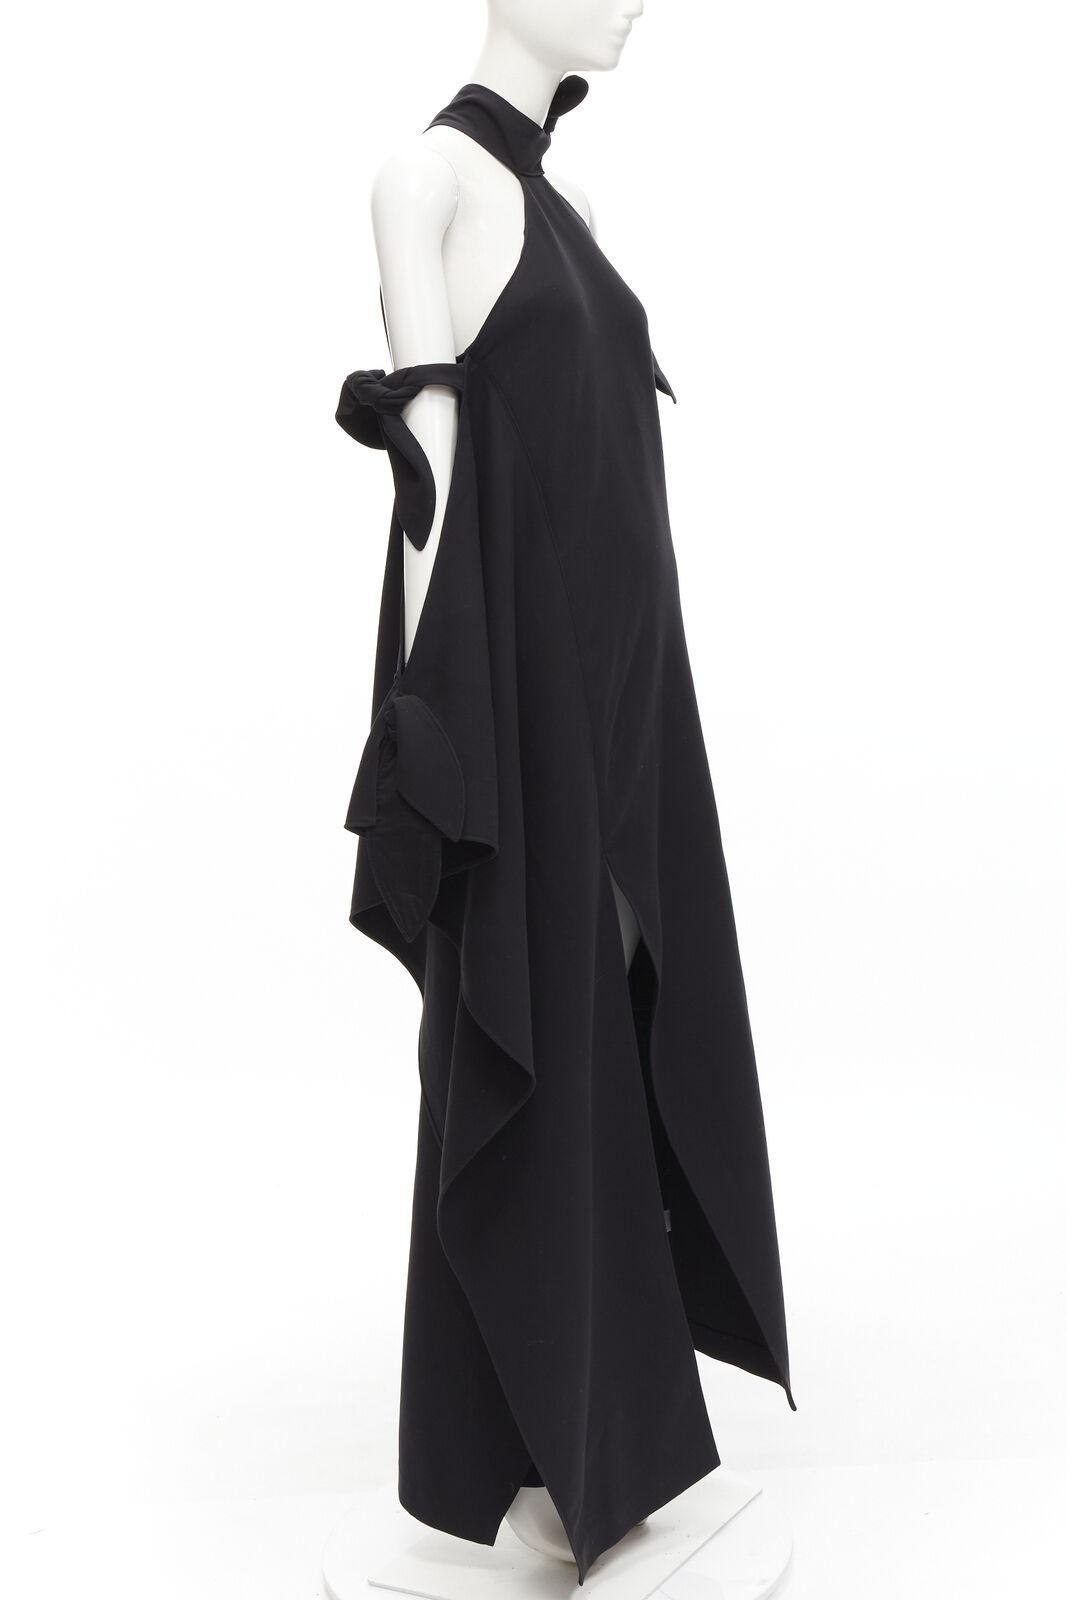 Black ROSIE ASSOULIN 2015 Runway black cold shoulder high slit halter gown dress US2 S For Sale